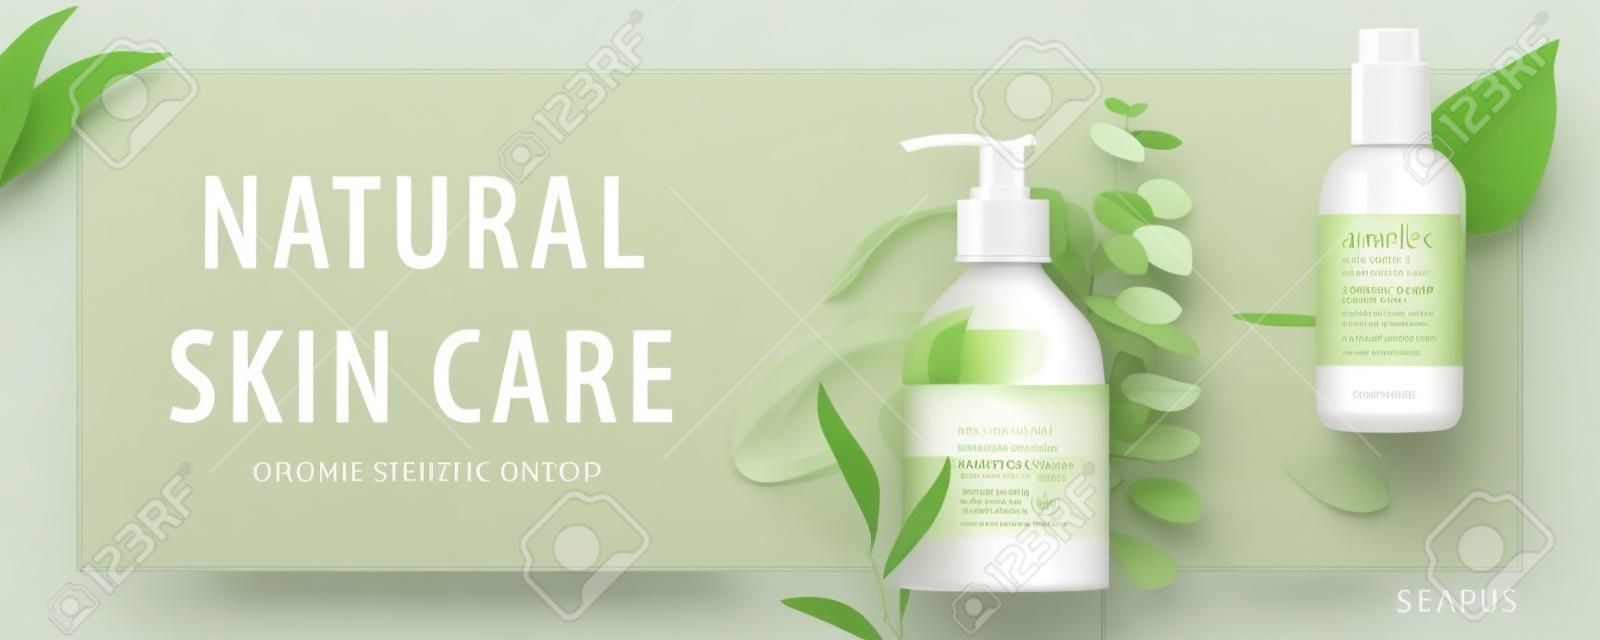 Banner pubblicitario per prodotti di bellezza semplici, modelli decorati con foglie naturali e tratti color crema, concetto di cura della pelle organica, illustrazione 3d